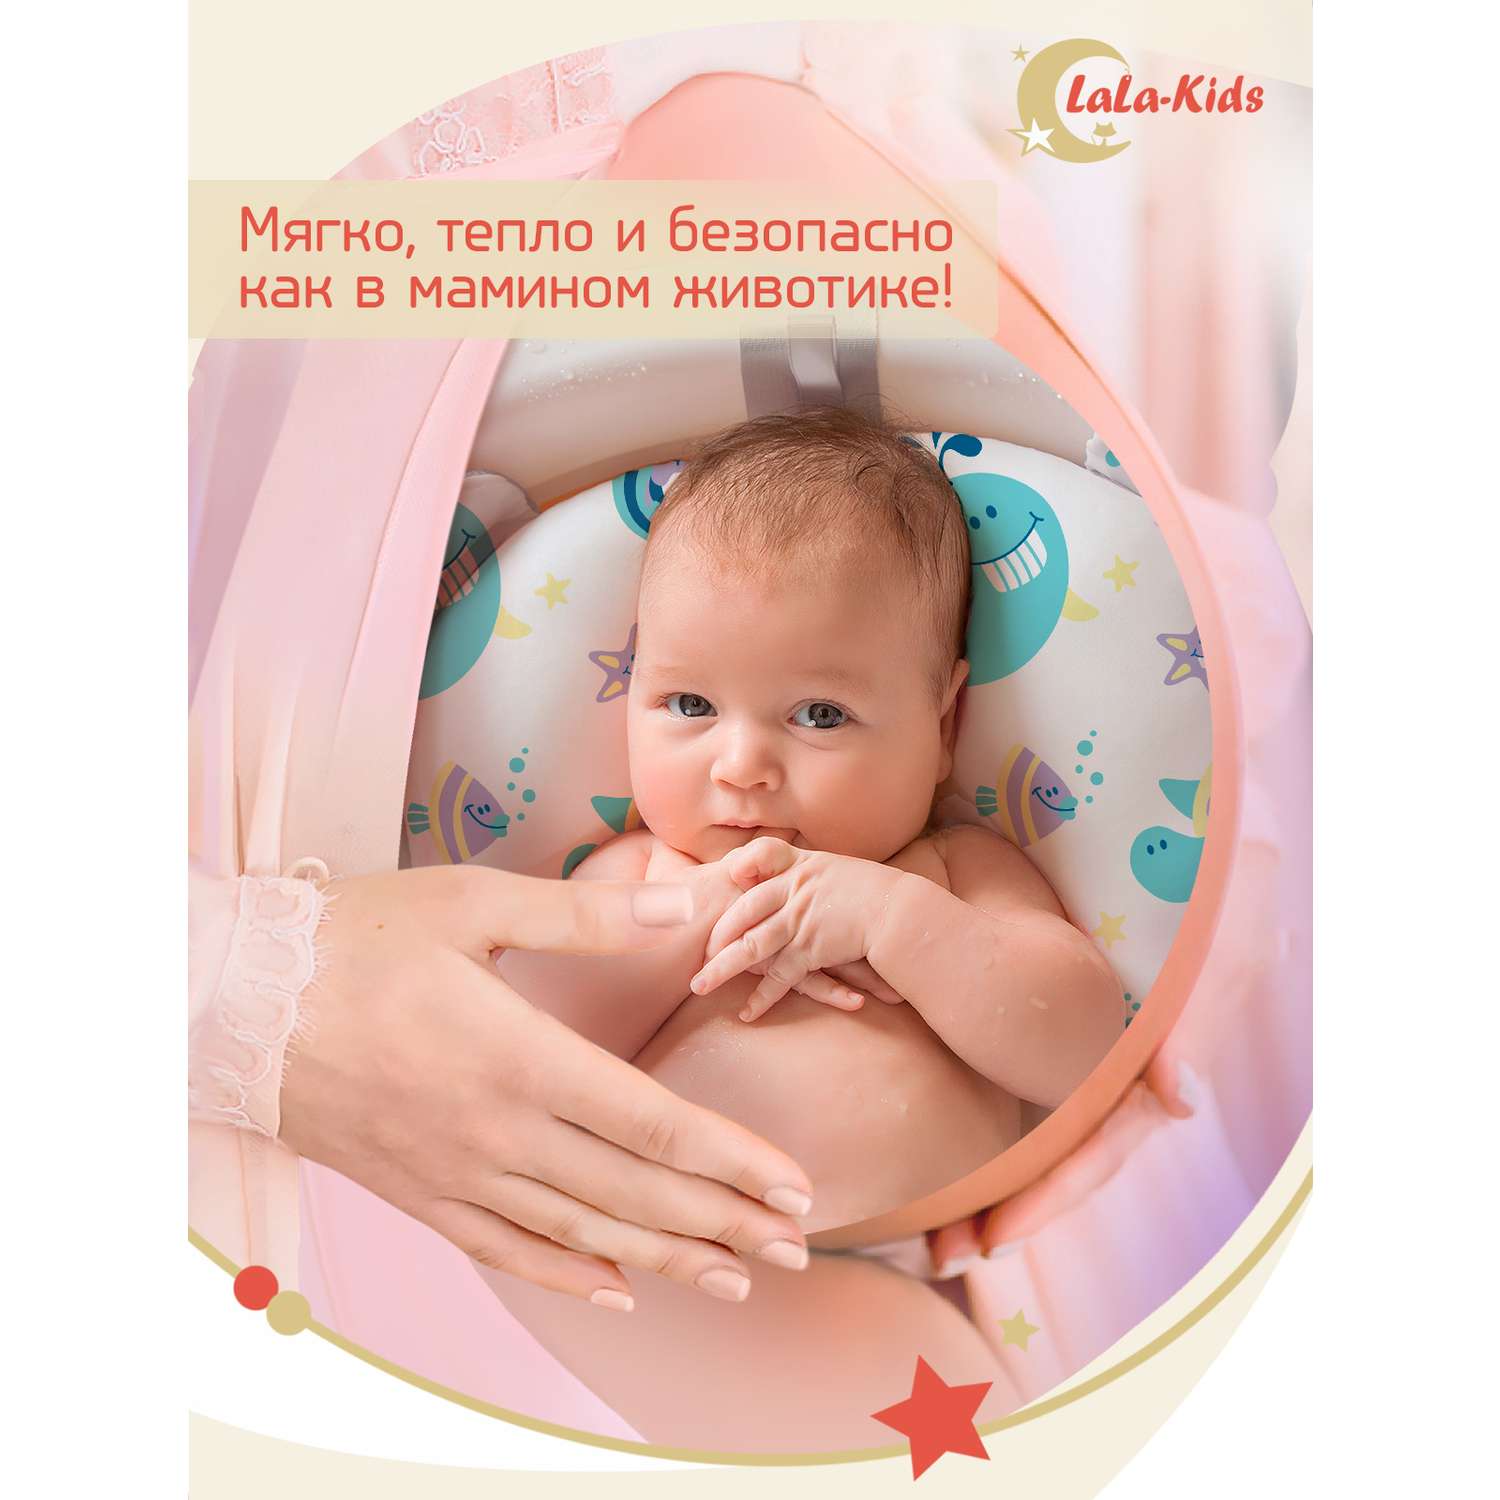 Детская ванночка с термометром LaLa-Kids складная для купания новорожденных с термометром и матрасиком в комплекте - фото 12